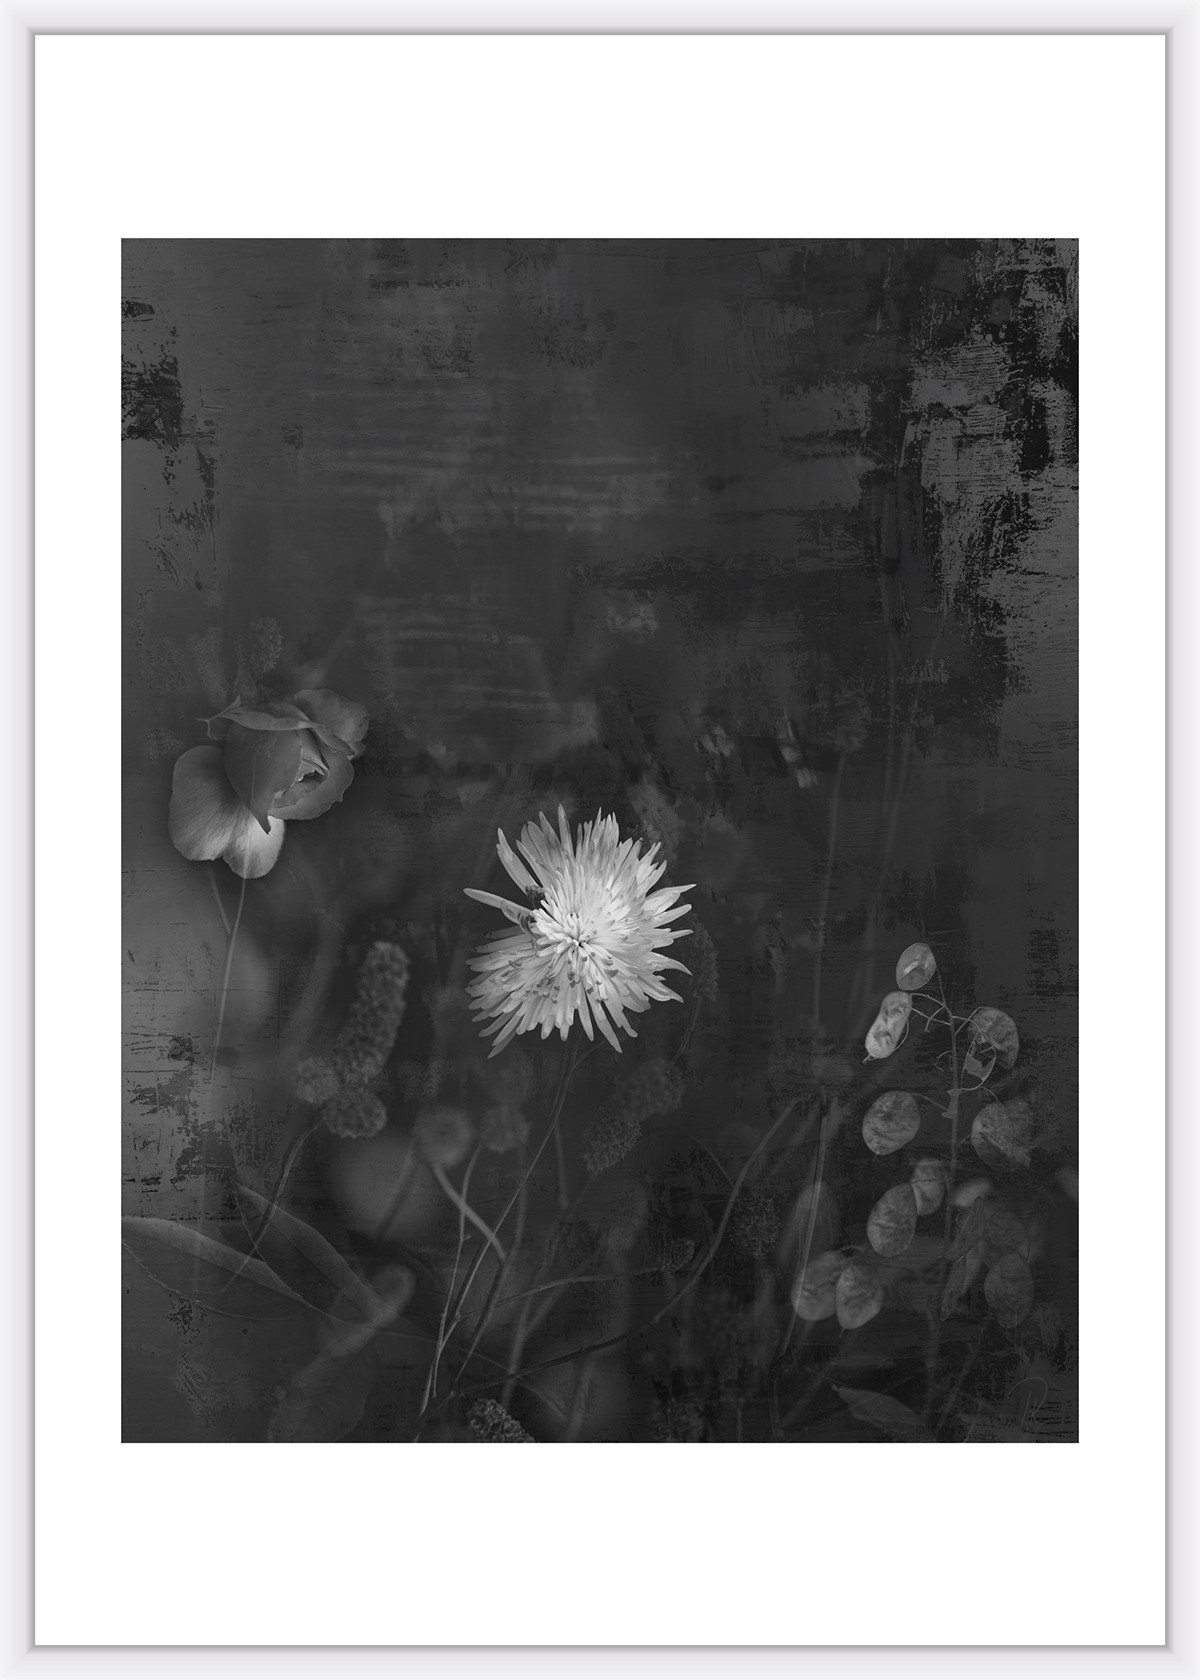 blumen Canon collage Kunstausstellung natur Photographien schwarz weiss wasser fotografie